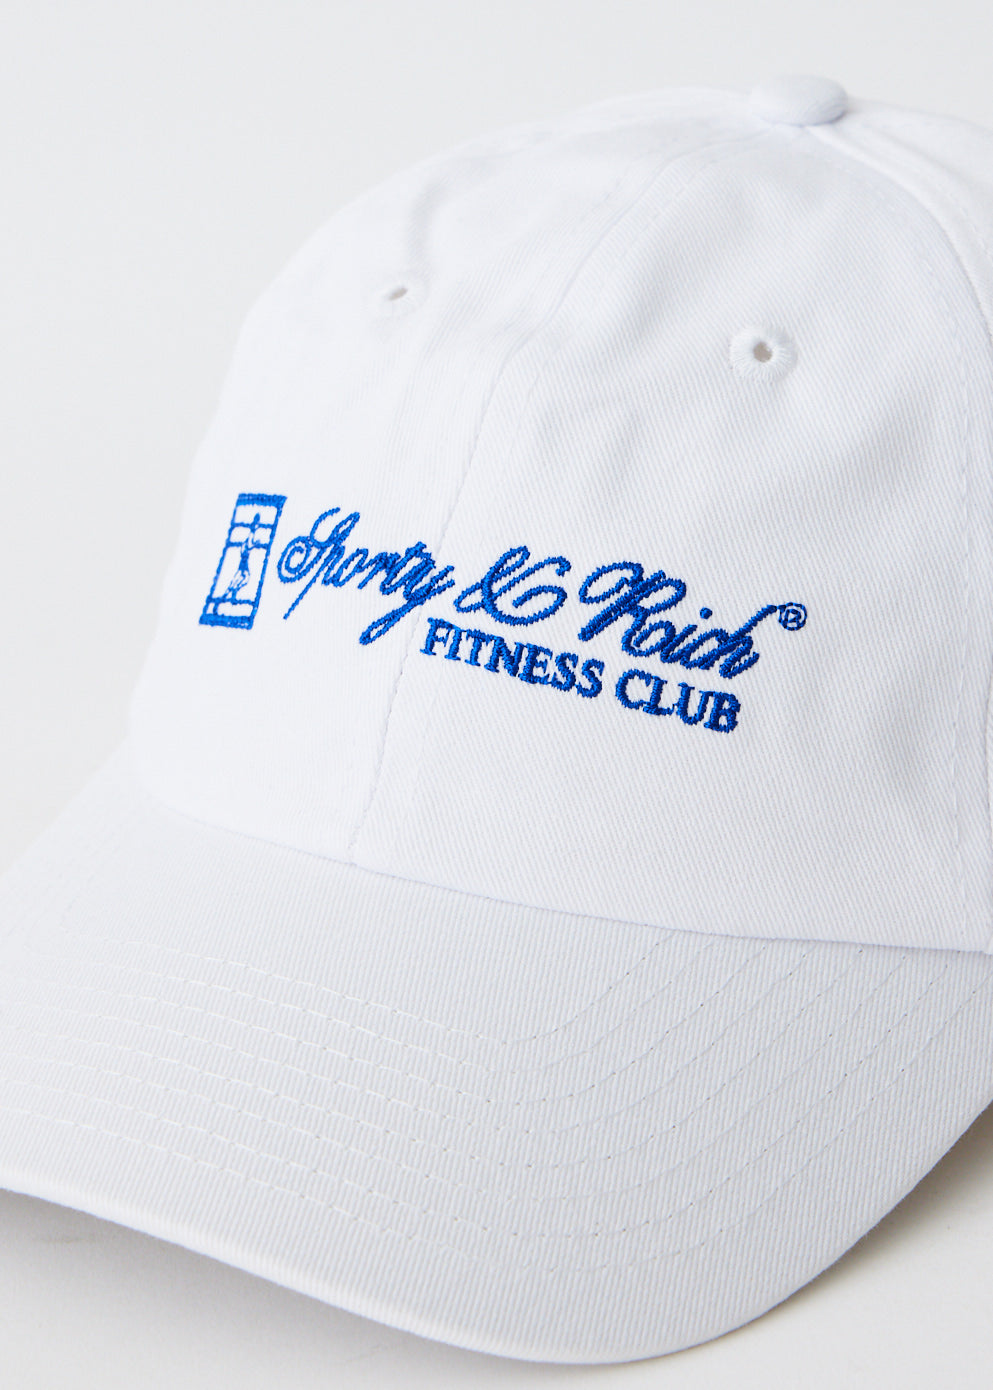 Fitness Club Hat